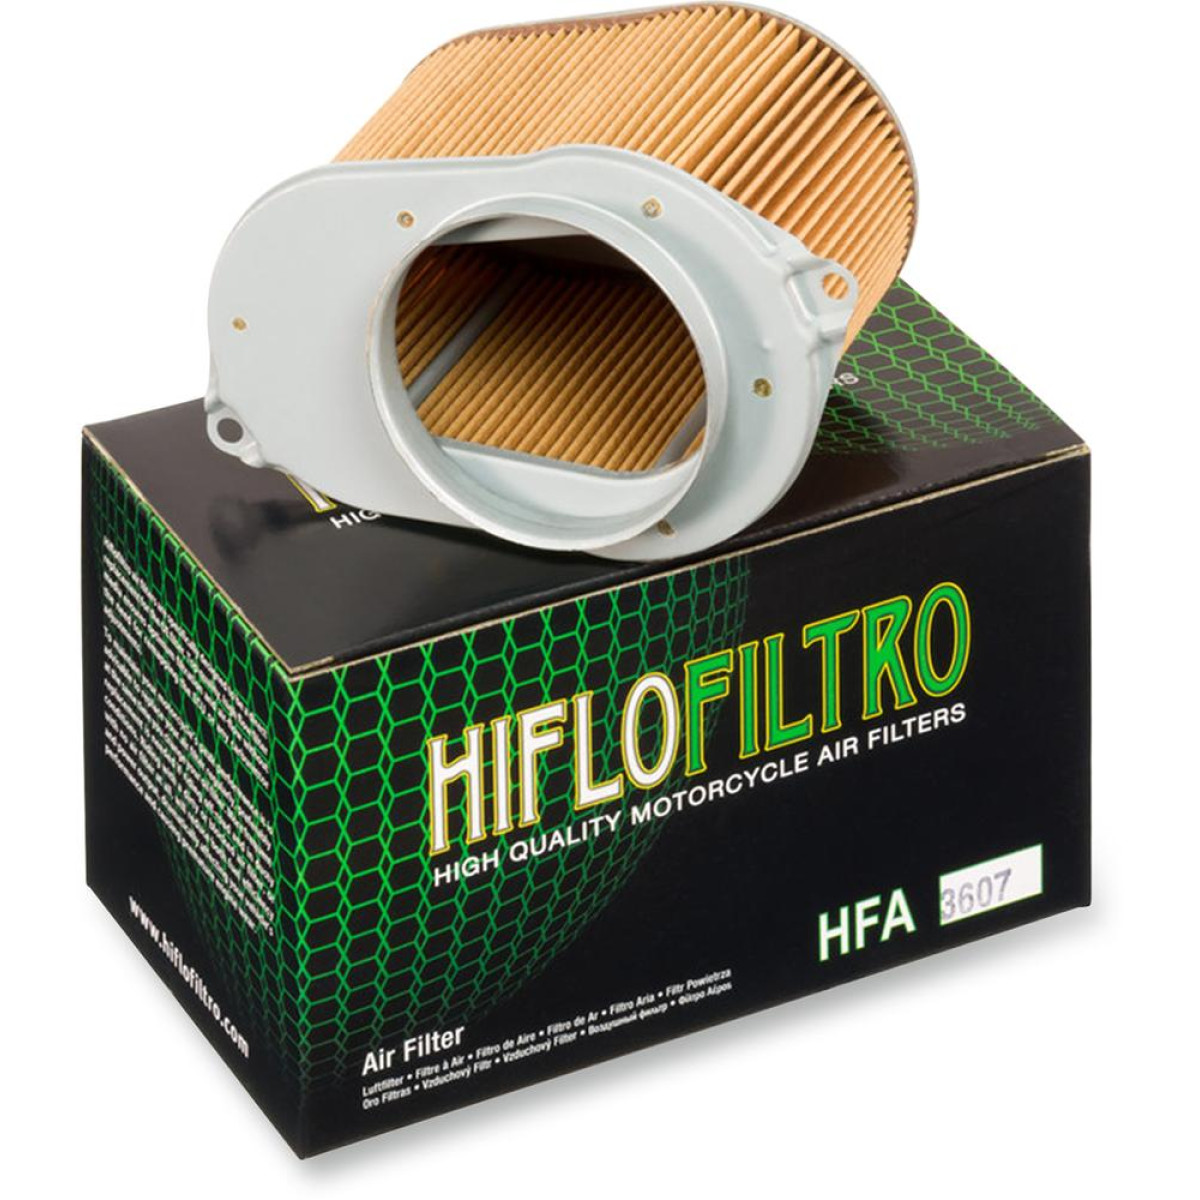 FILTRO AIRE HIFLOFILTRO HFA3607 SUZUKI VS700 86/88 / SUZUKI VS750 85/91